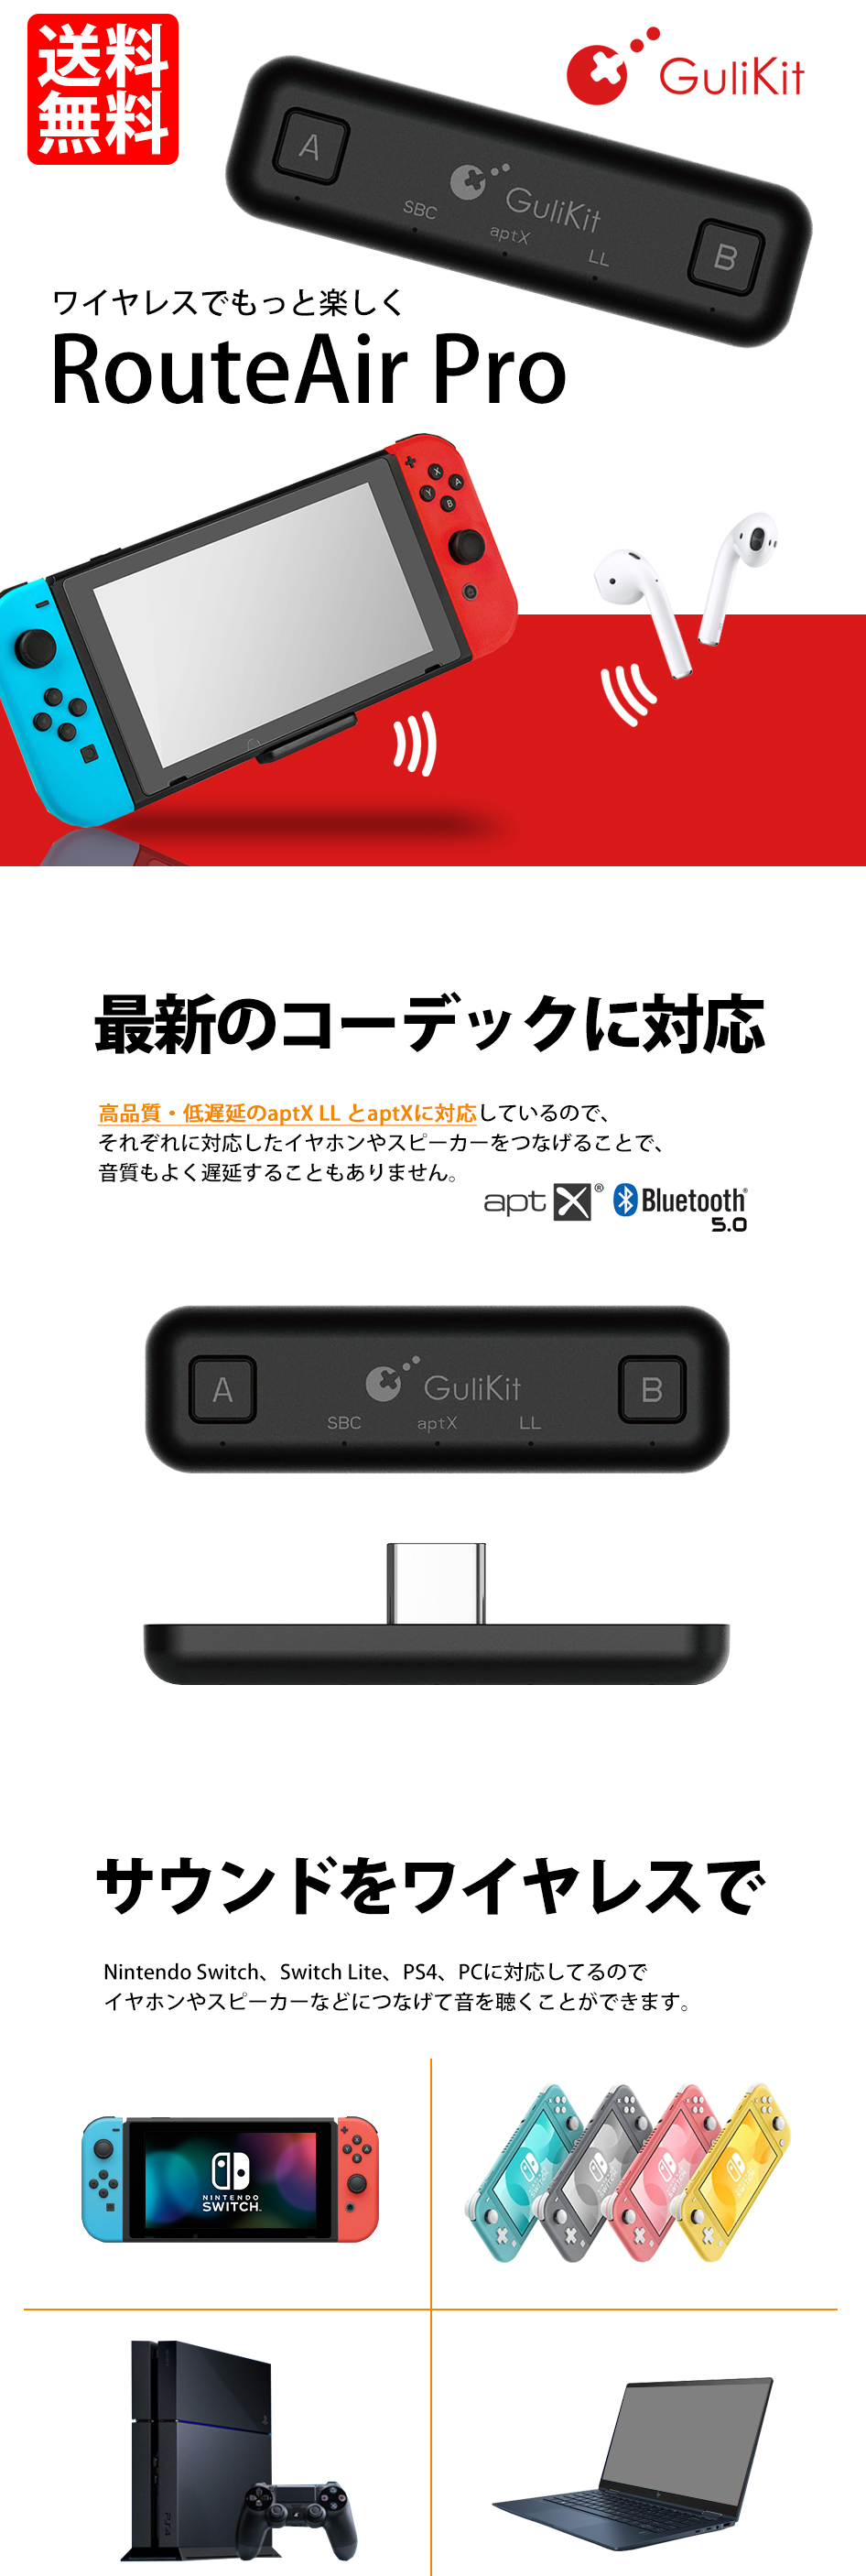 スイッチ用 Bluetooth送信機 トランスミッター マイク付 bluetooth5.0 Nintendo SWITCH 2台 同時接続 任天堂  ROUTE AIR PRO 送料無料 :LBS-route-air-pro:ライトニングブースS 通販 